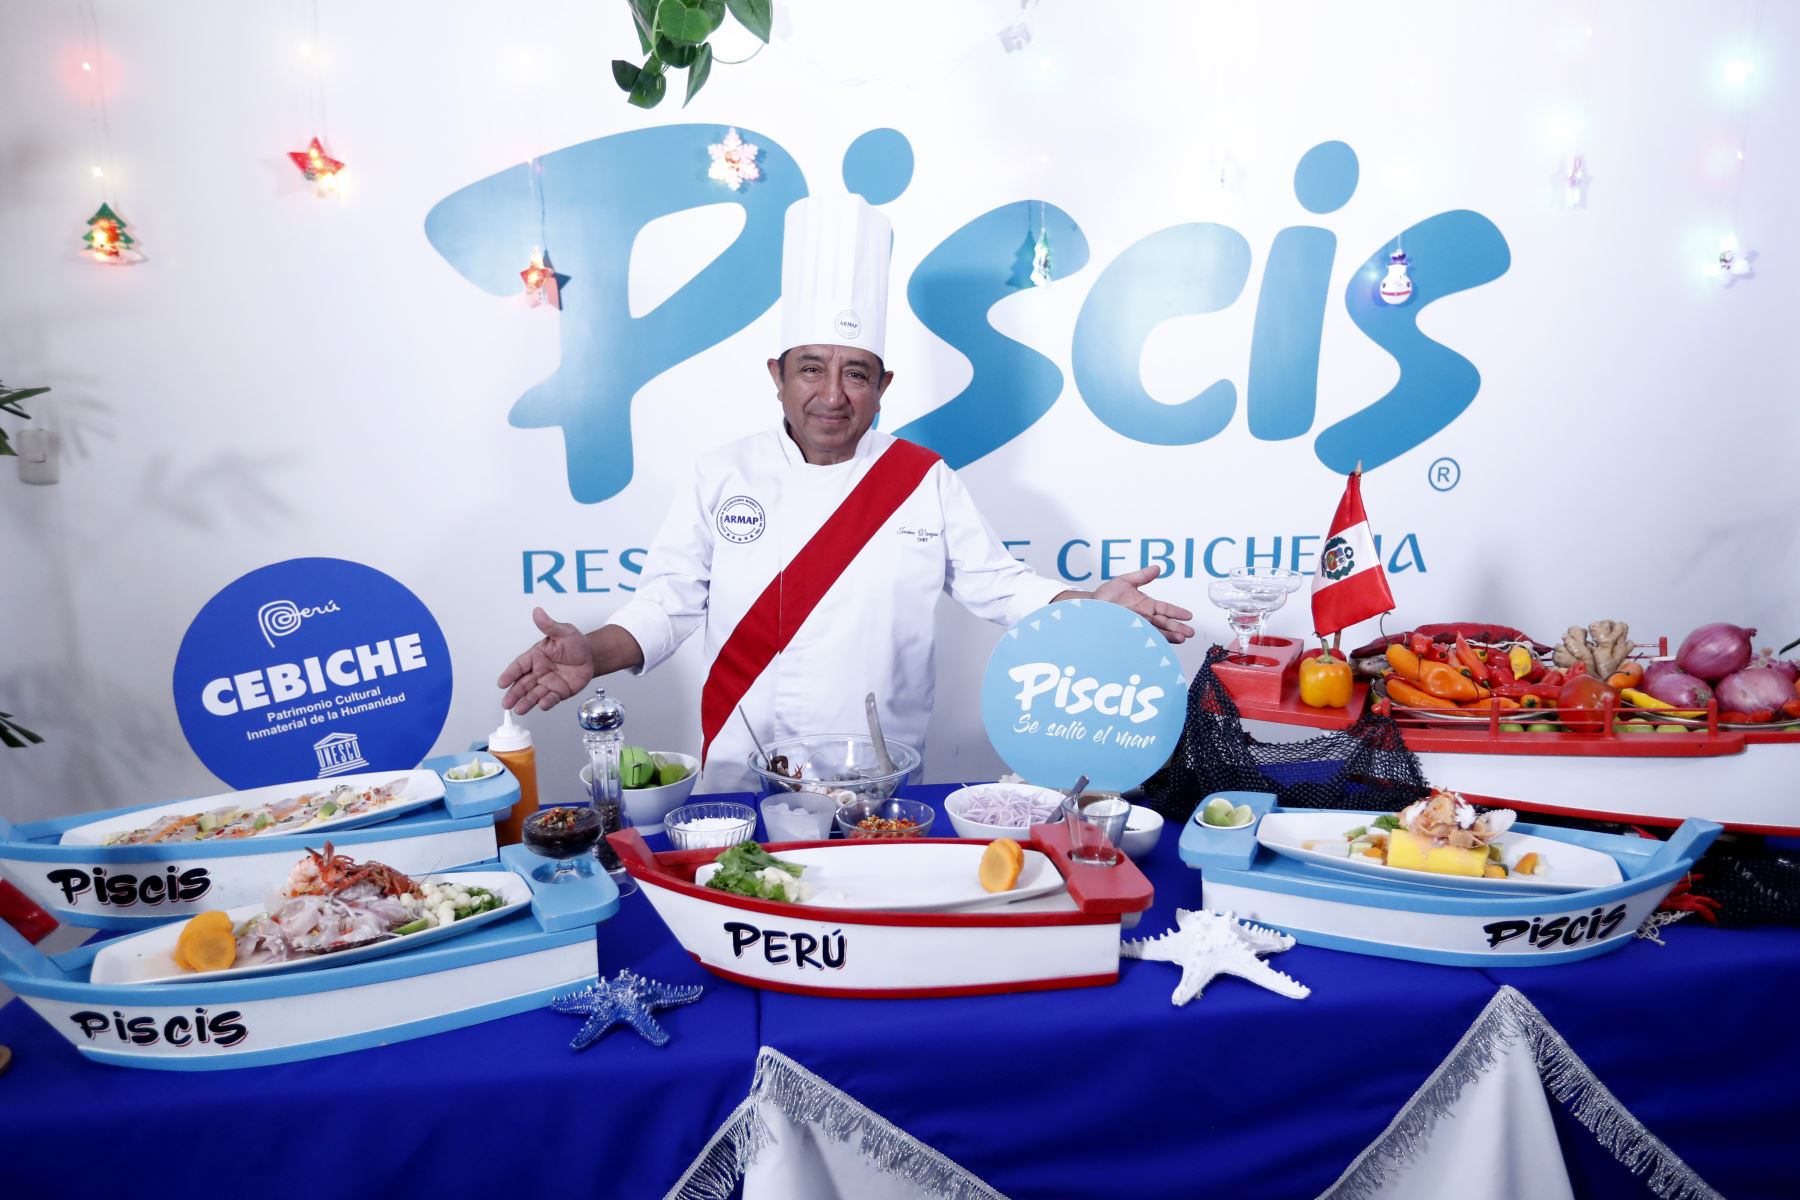 Javier Vargas, chef del restaurante Piscis, presenta ante la prensa nacional diversas preparaciones del cebiche durante el lanzamiento de la Gran Cebichada Chalaca que se realizará el viernes 15 de diciembre. Foto: ANDINA/Daniel Bracamonte